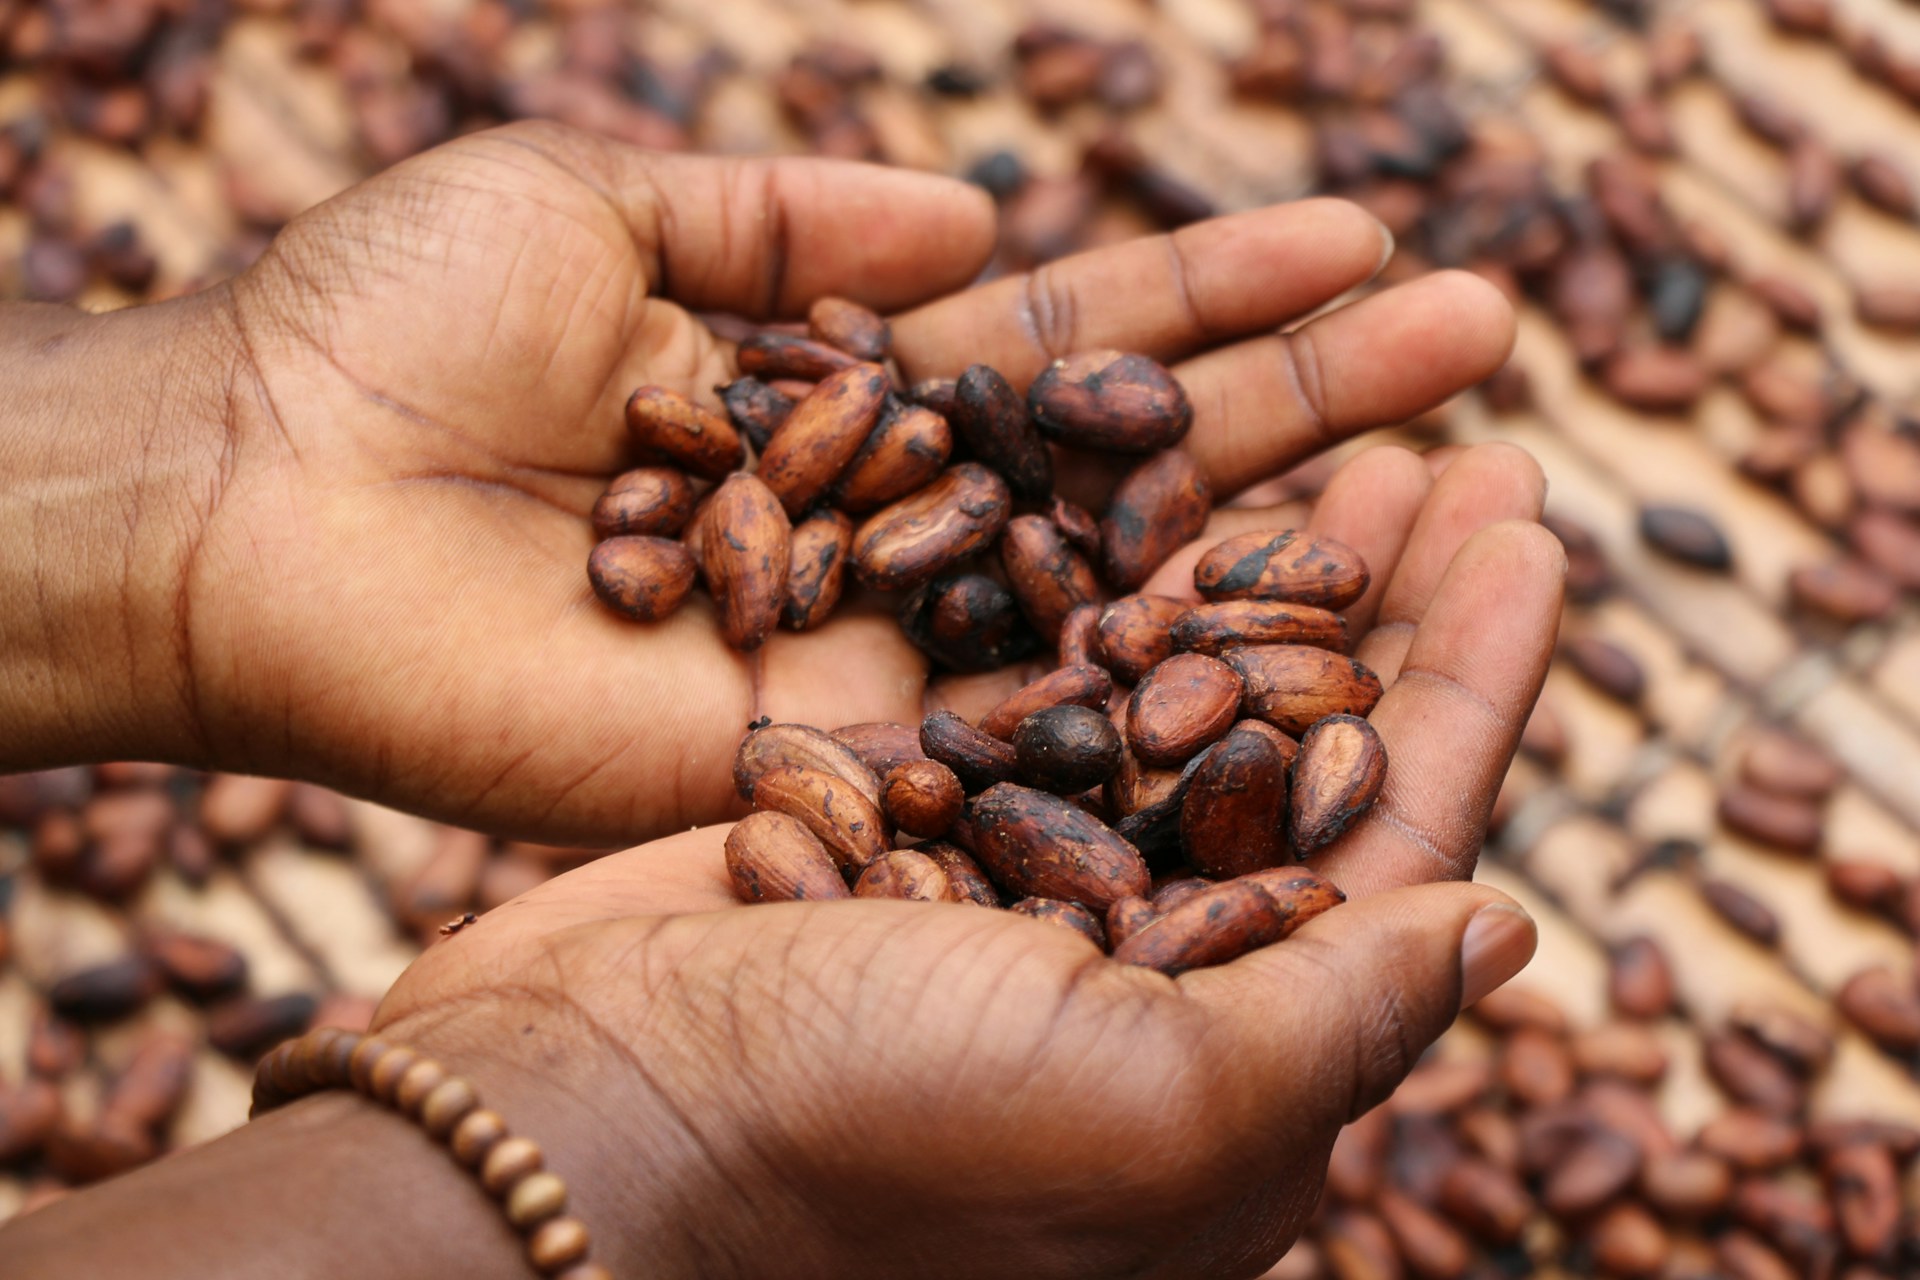 Les pays africains producteurs de cacao profitent-ils de la hausse astronomique des prix ?